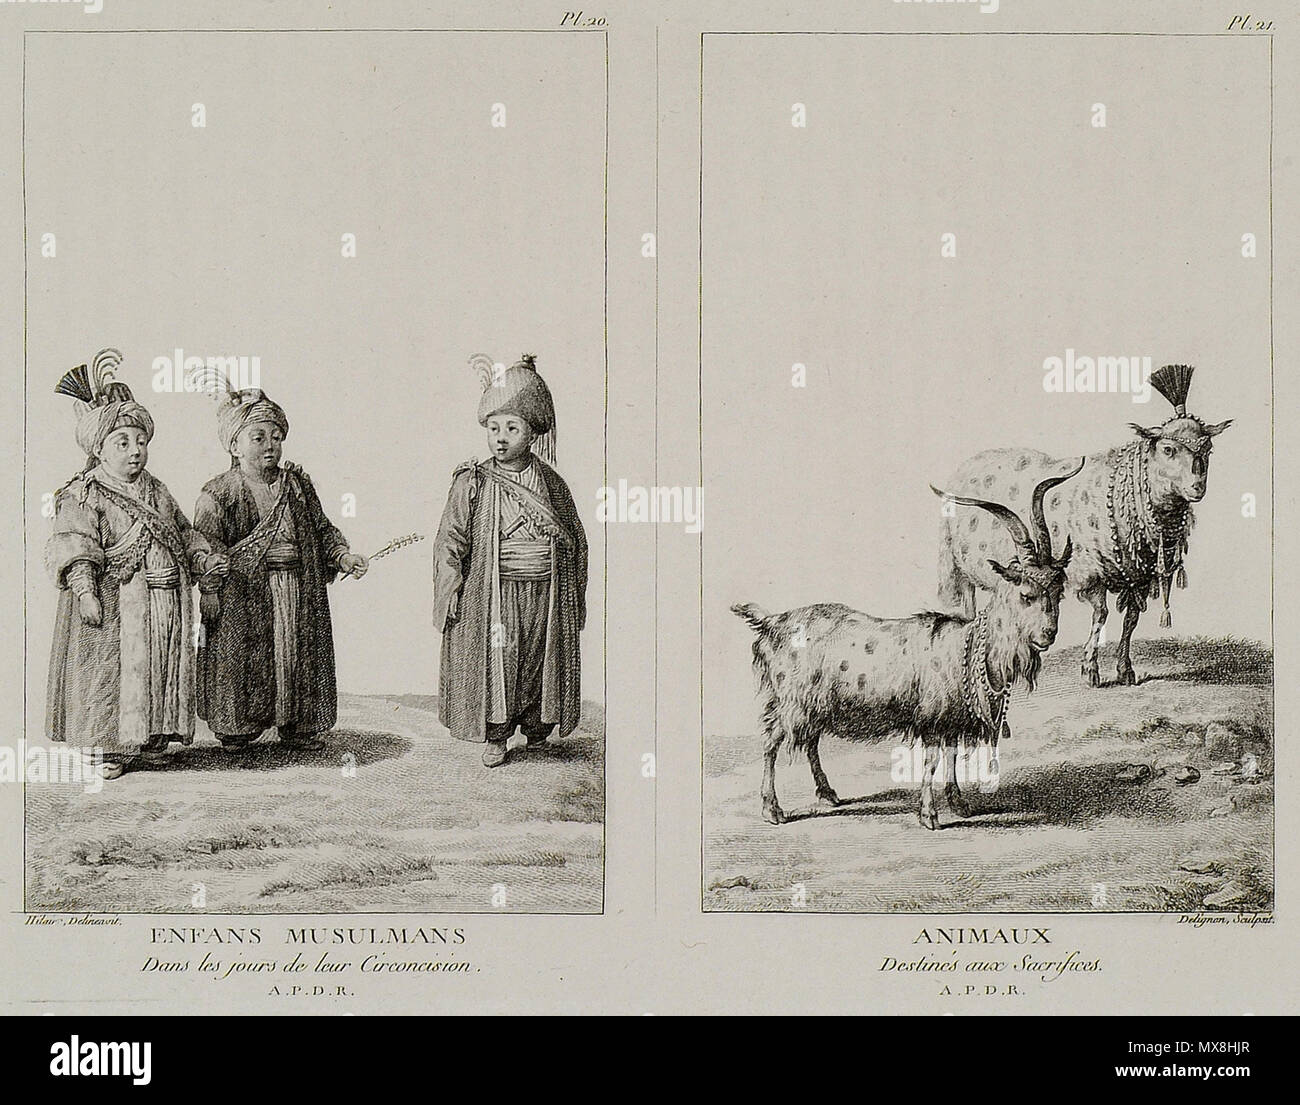 191 Enfans Musulmans dans les Jours de Leur circoncision Animaux destinés aux Opfer - Mouradgea D'ohsson - 1787 Stockfoto